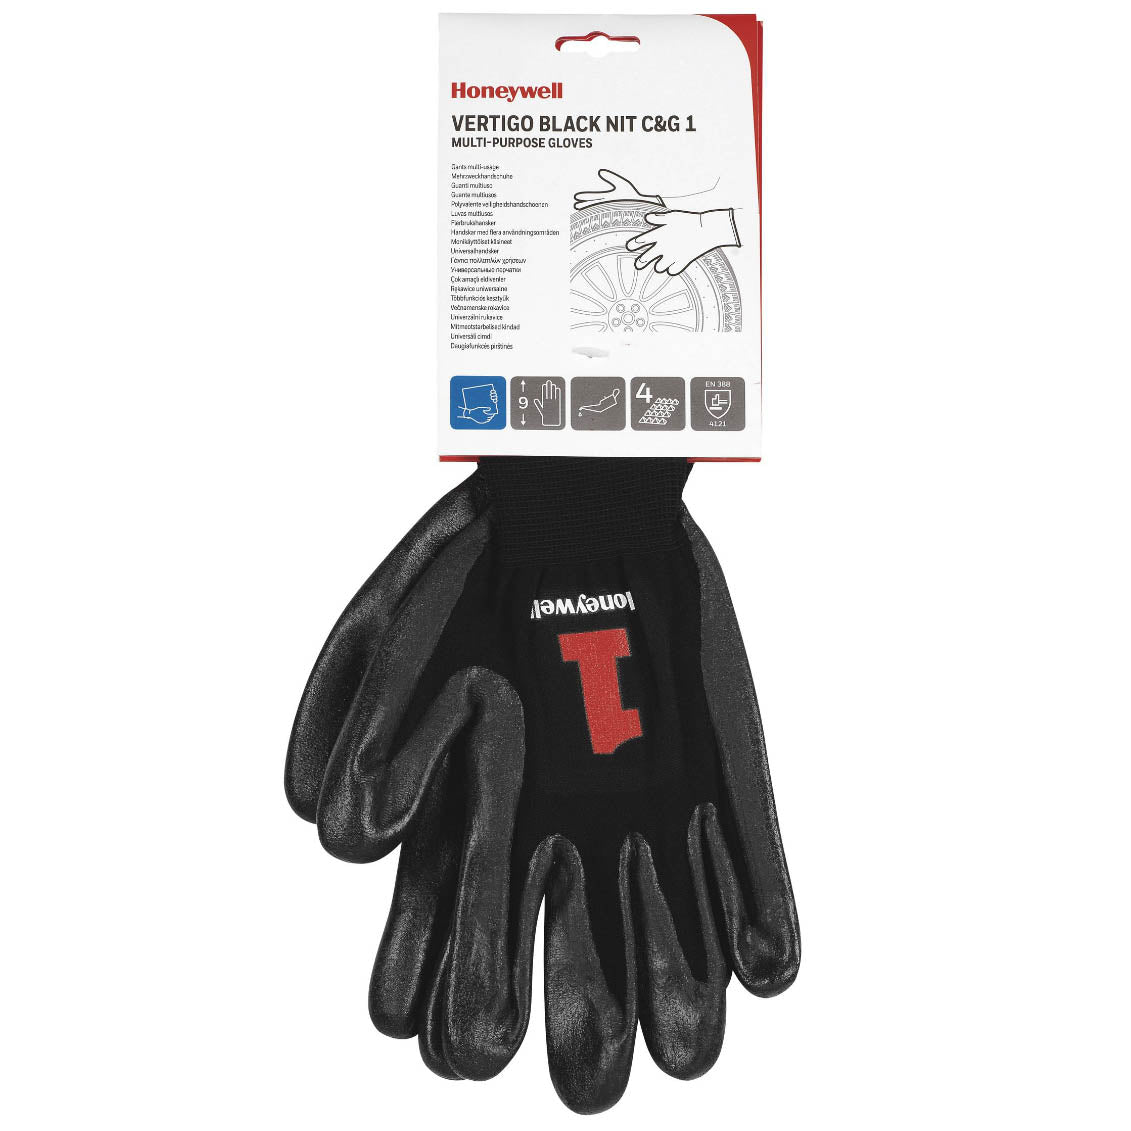 Honeywell 2232270 Vertigo Black Nitrile C&G 1 Gloves